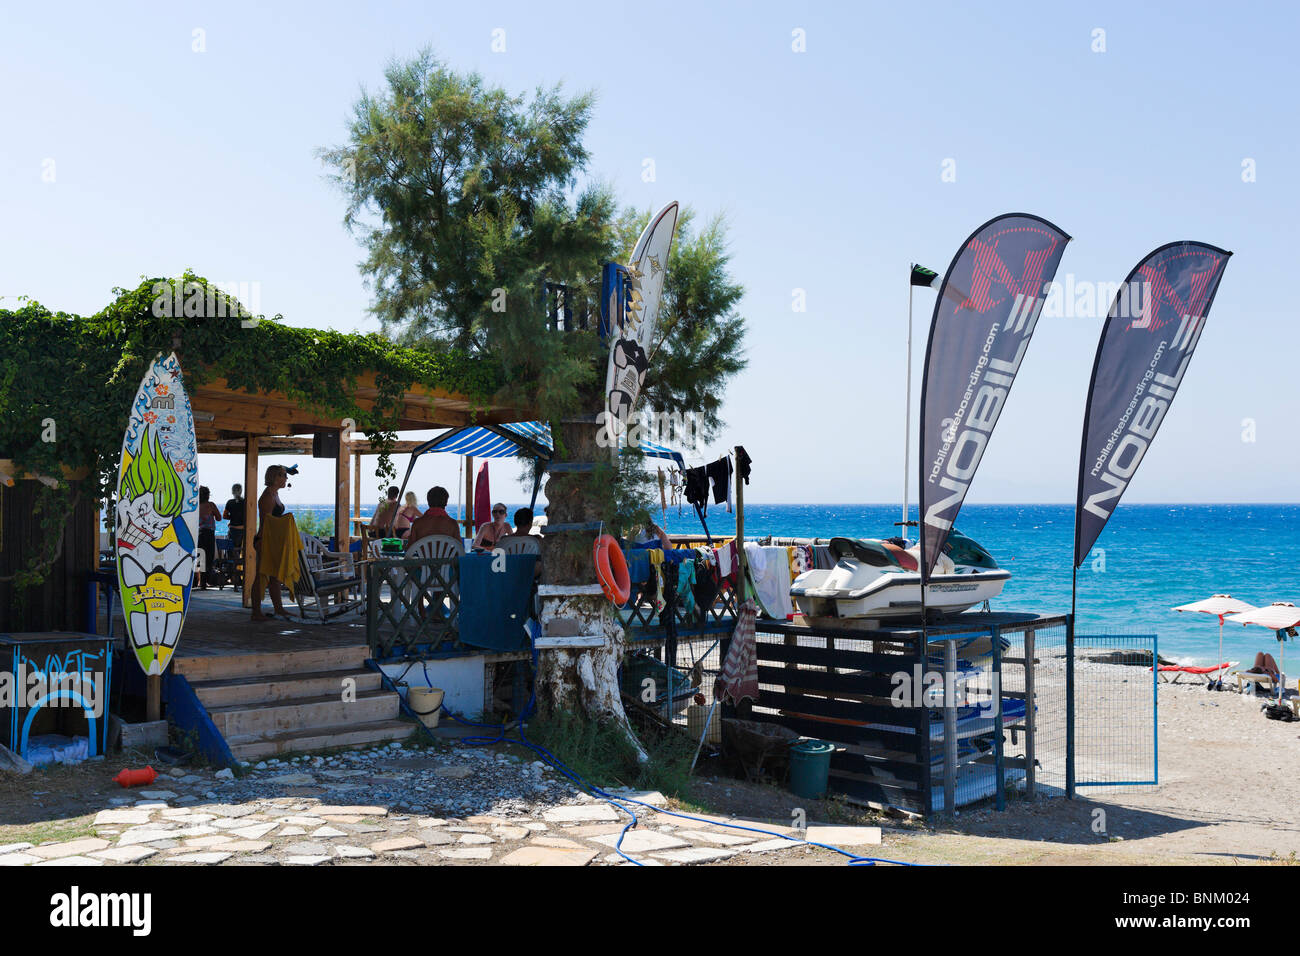 Windsurfing and kiteboarding centre on the beach at Ixia, near Ialyssos, Bay of Trianda, Rhodes, Greece Stock Photo